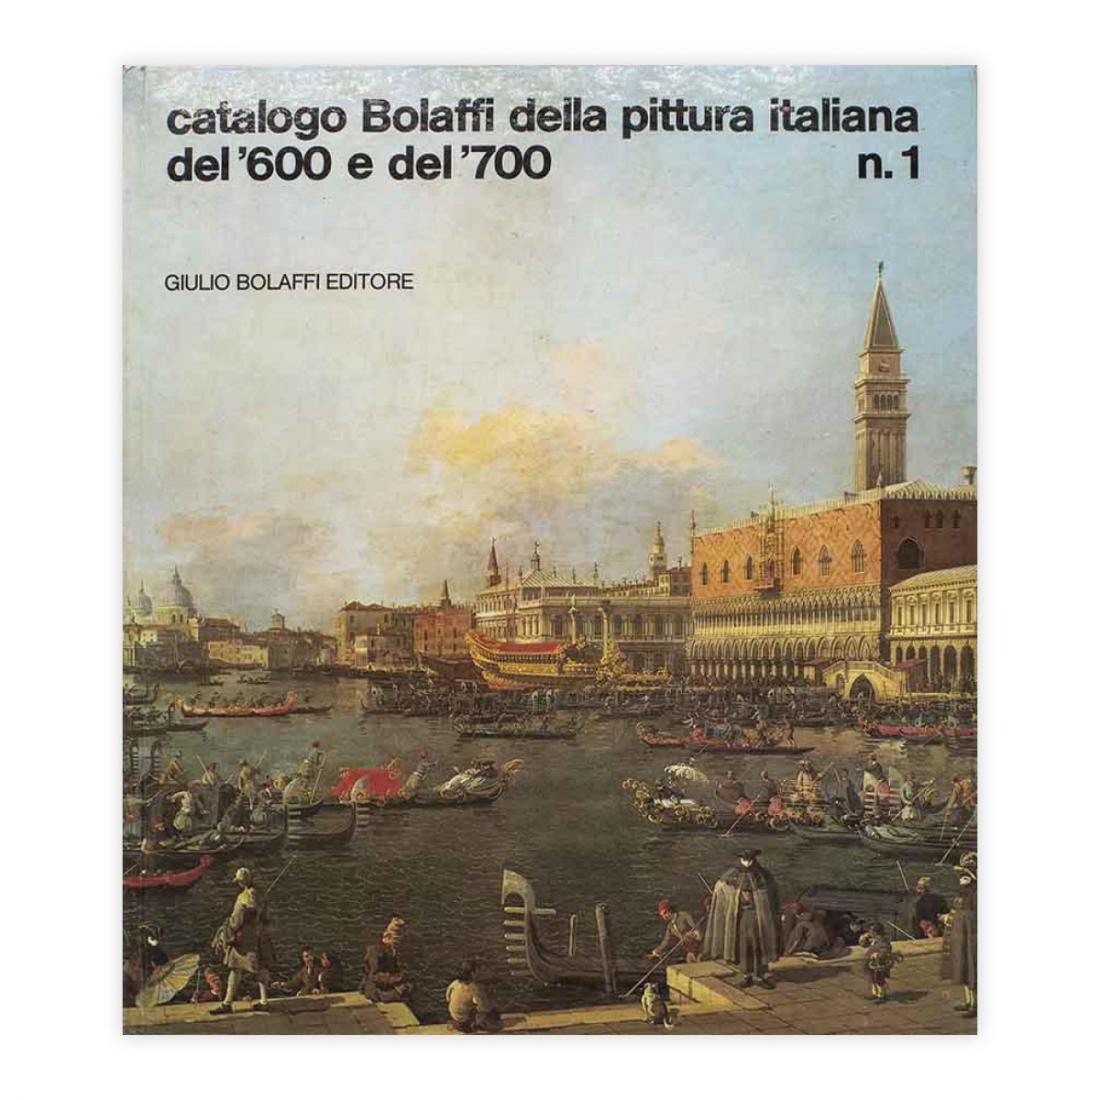 Catalogo Bolaffi della pittura Italiana del '600 e del '700